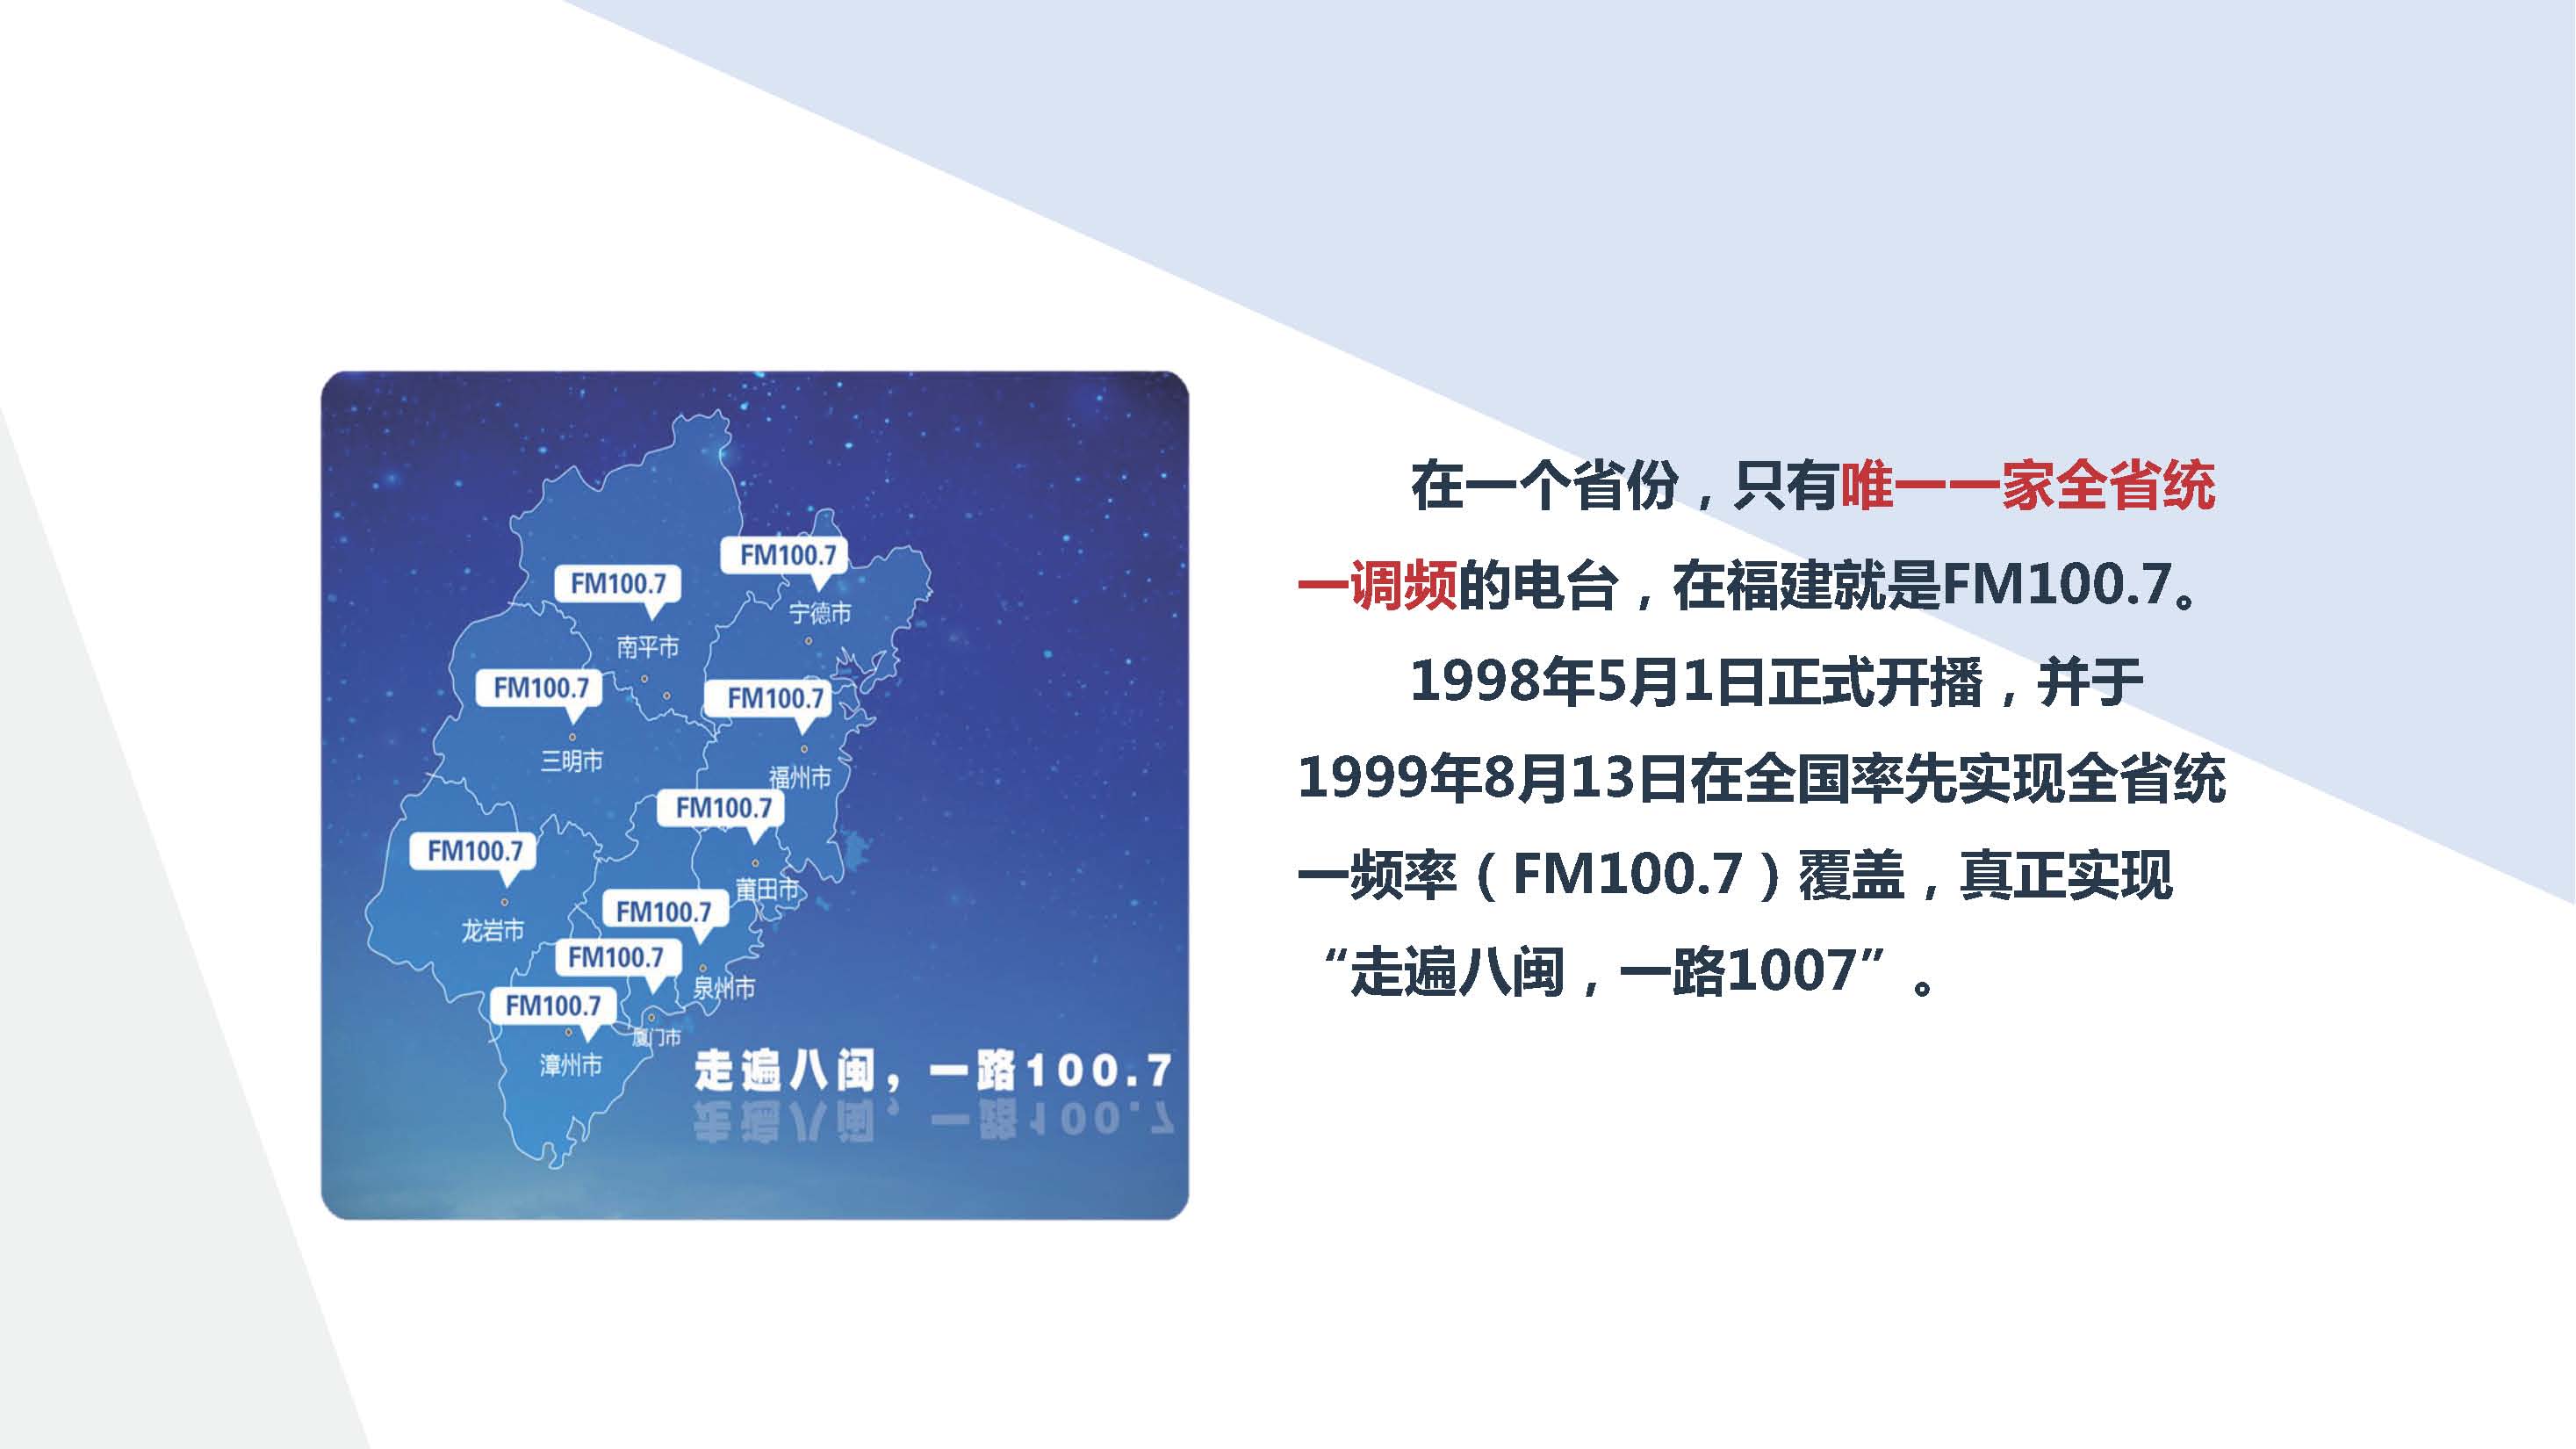 FM100.7福建交通广播媒体推介书2019年_页面_05.jpg